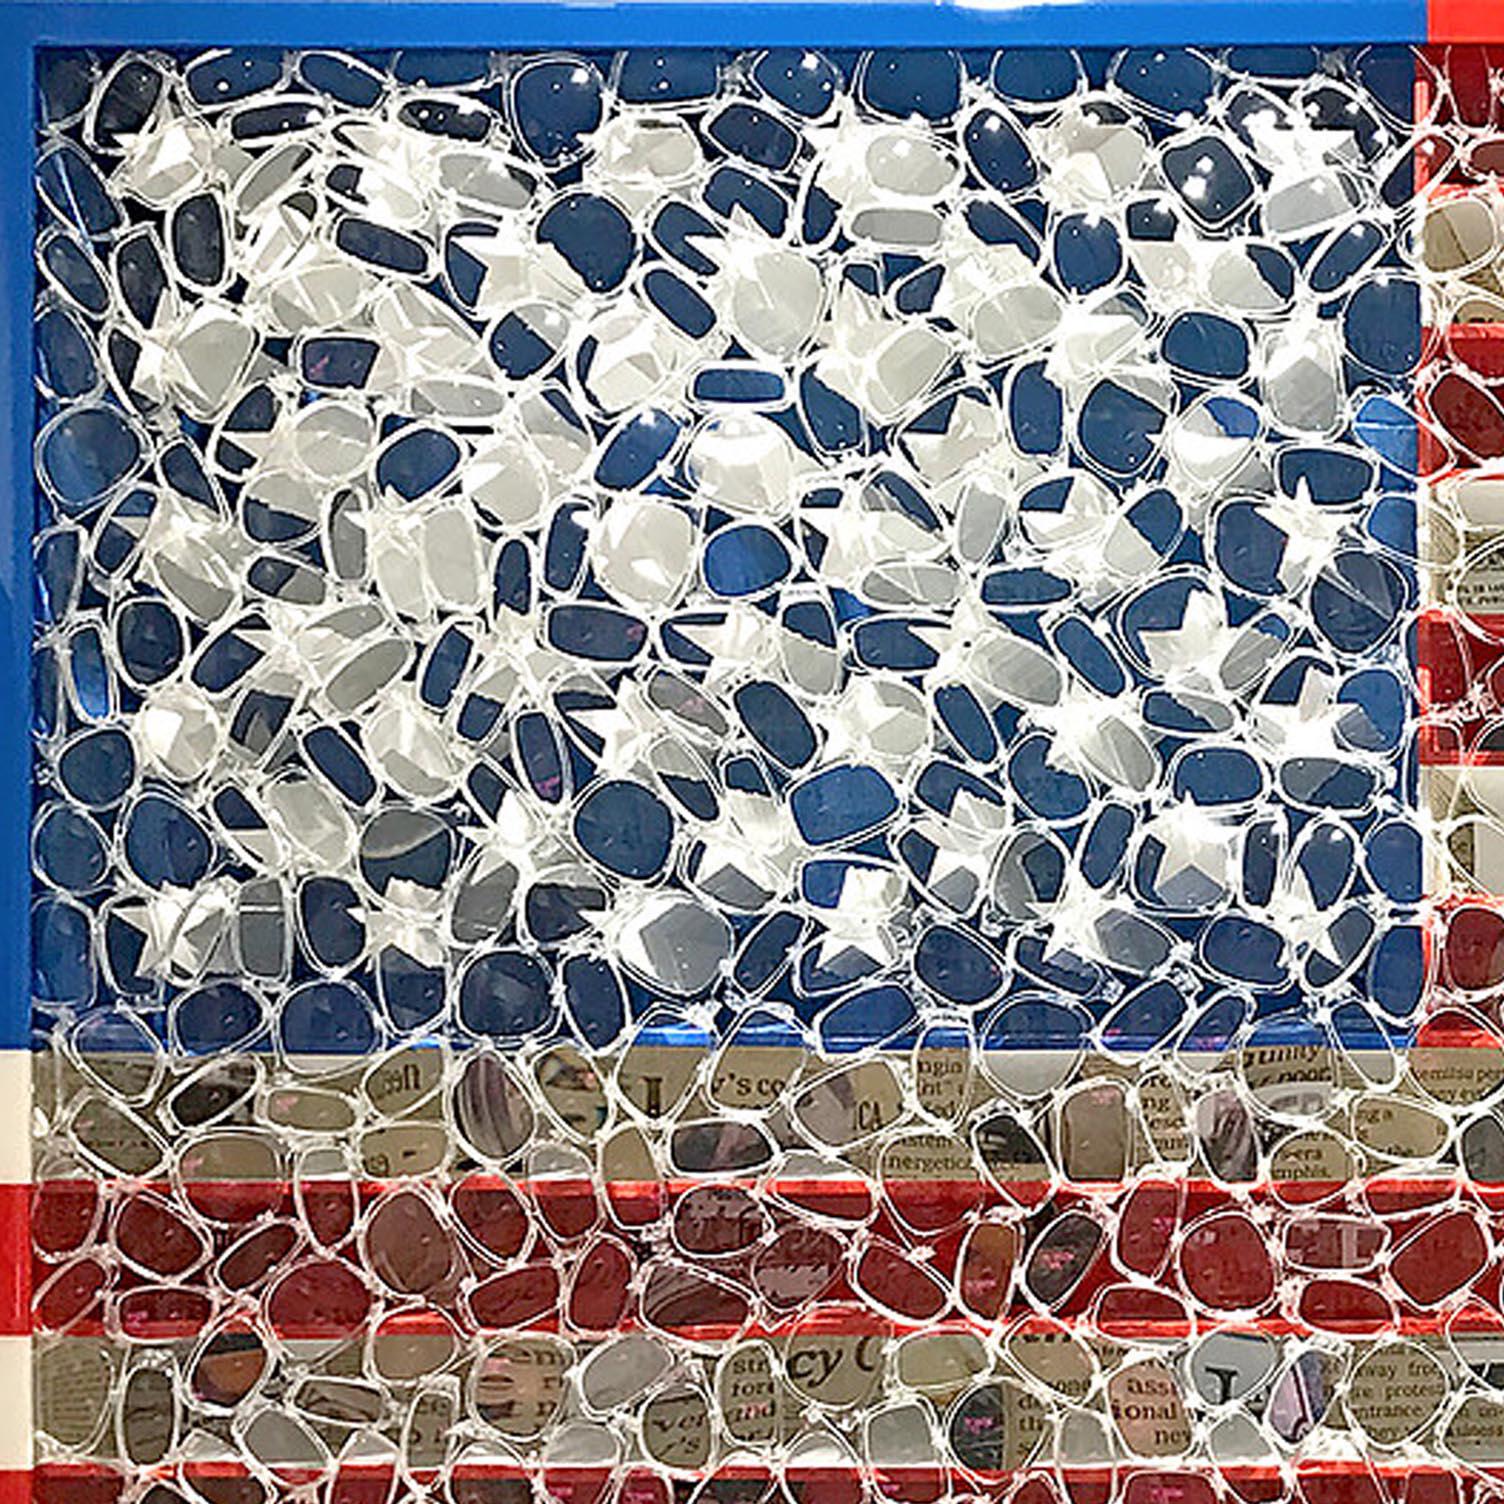 USA Flag - Sculpture by David Datuna